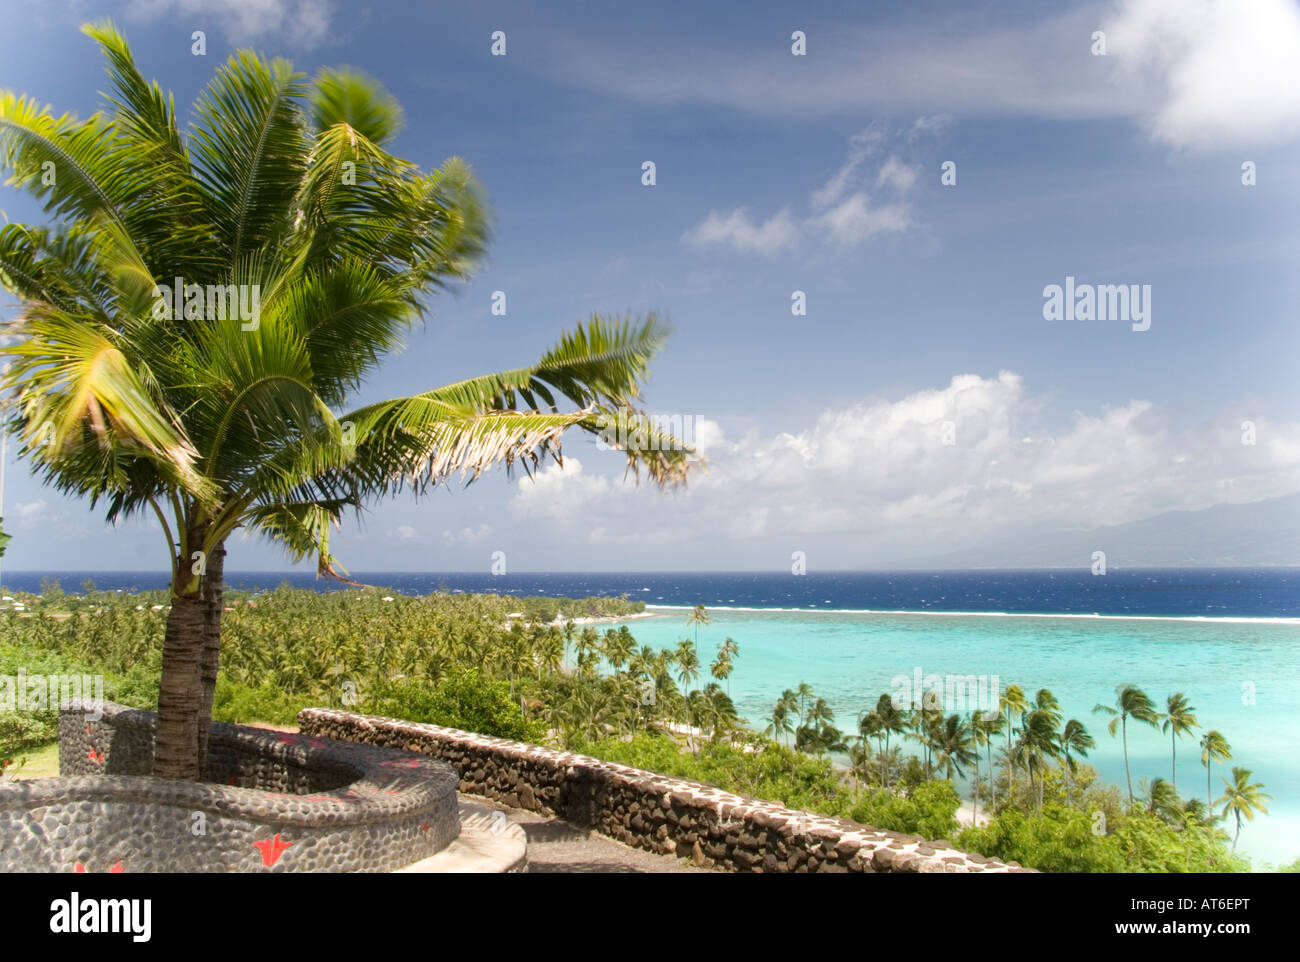 Einen herrlichen Blick auf das Sofitel Hotel Resort in der Südsee Insel Moorea in Französisch Plynesia im Süd-Pazifik Stockfoto